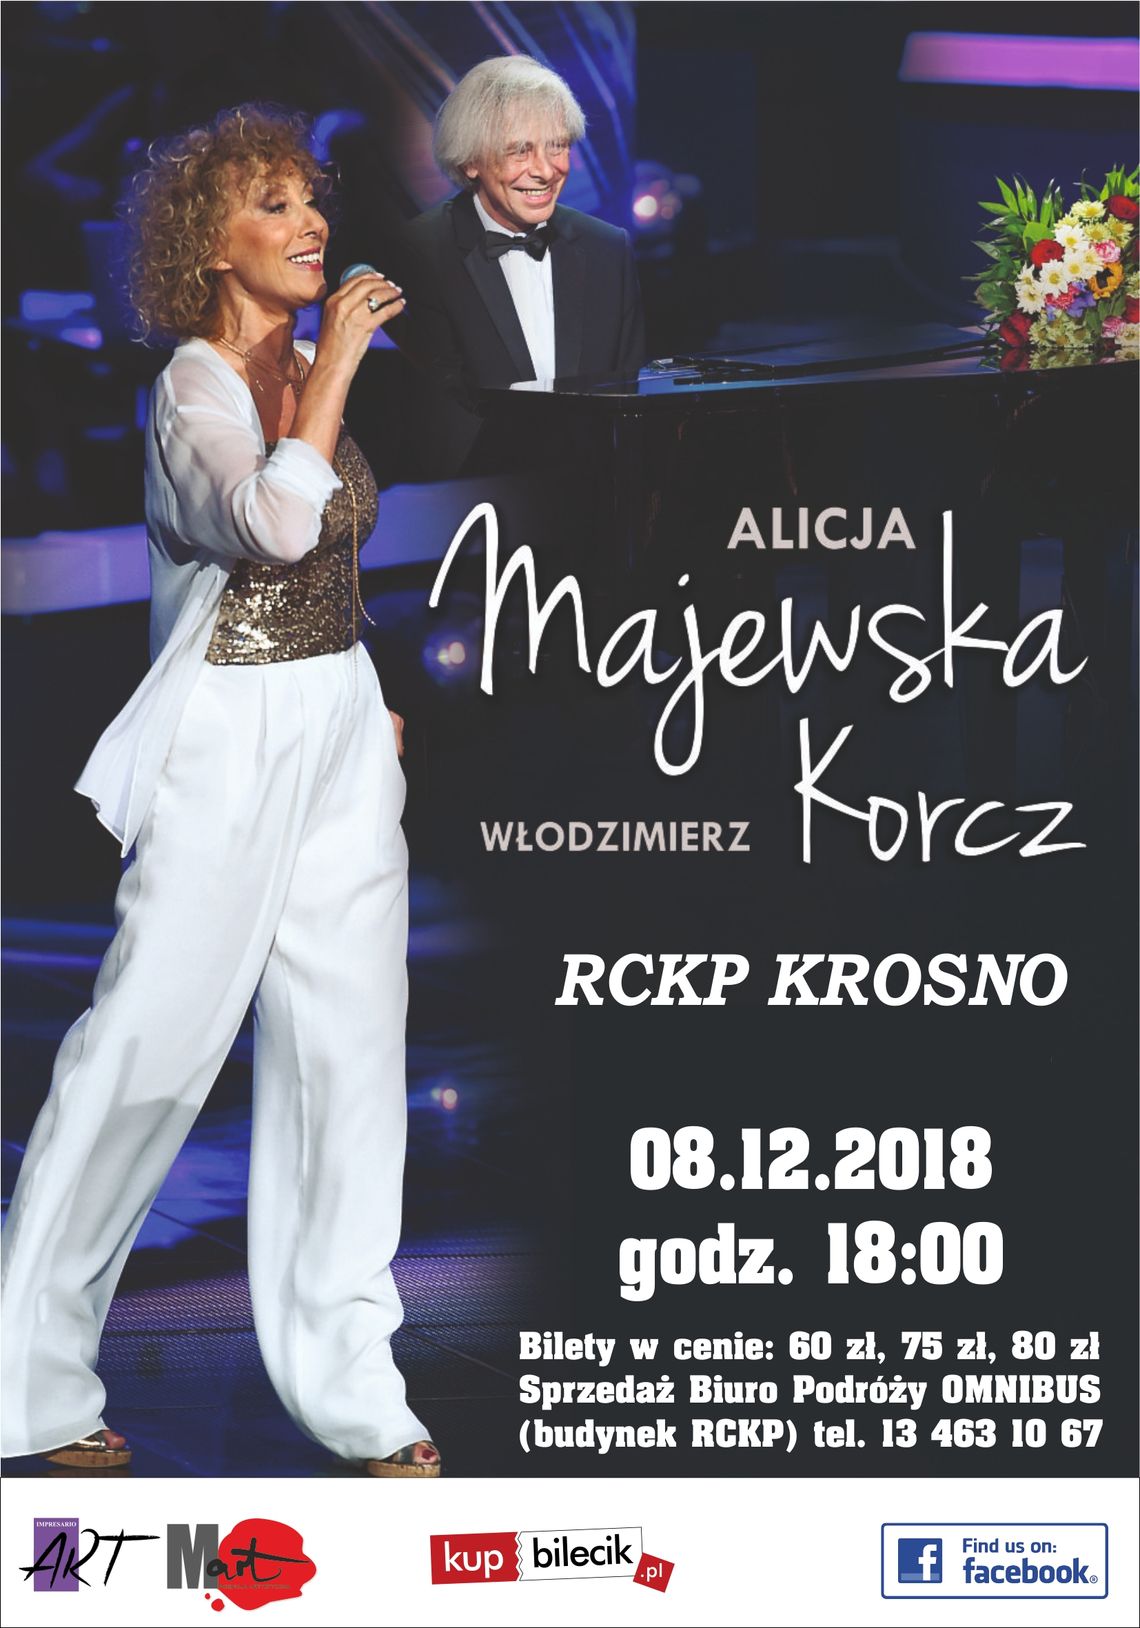 Alicja Majewska i Włodzimierz Korcz z udziałem kwartetu smyczkowego ,,Warsaw Opera Quartet"